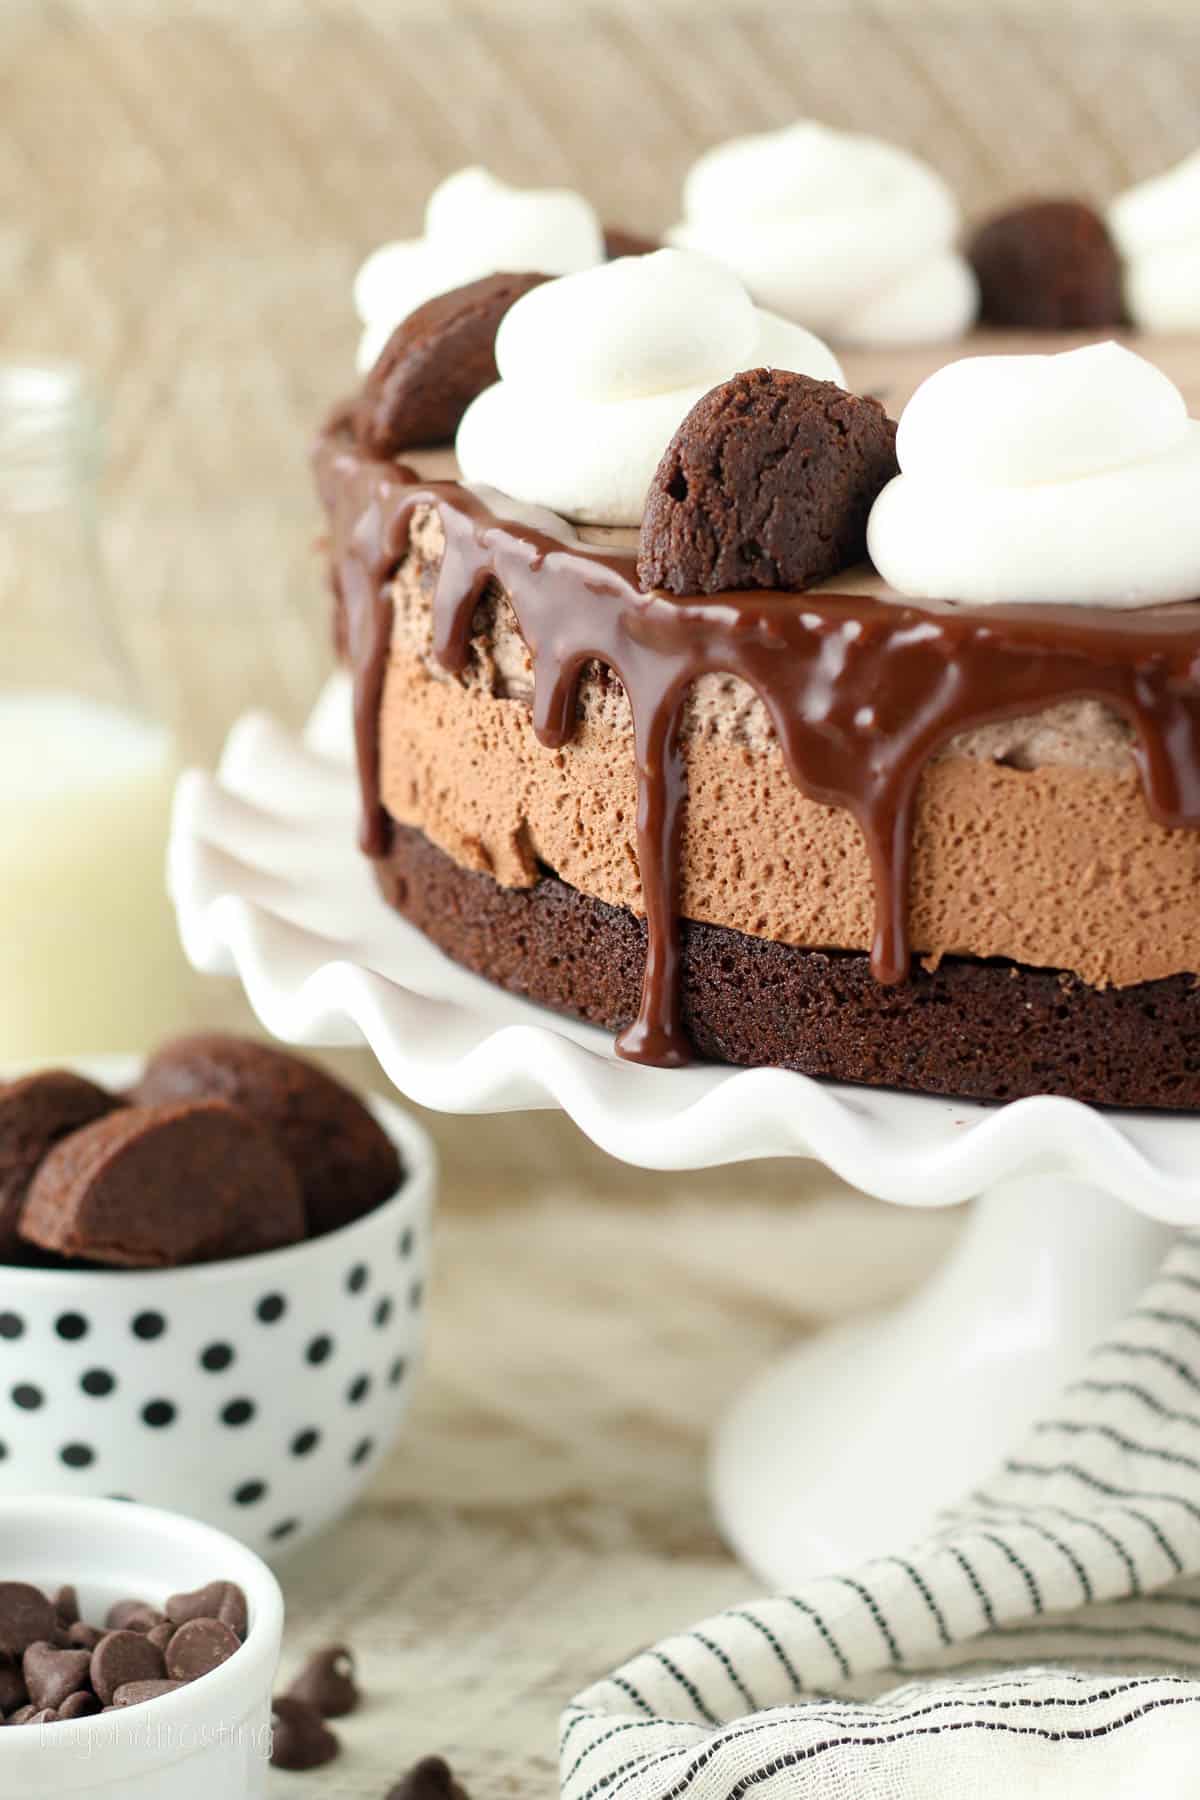 a whole triple chocolate cake on a cake stand.